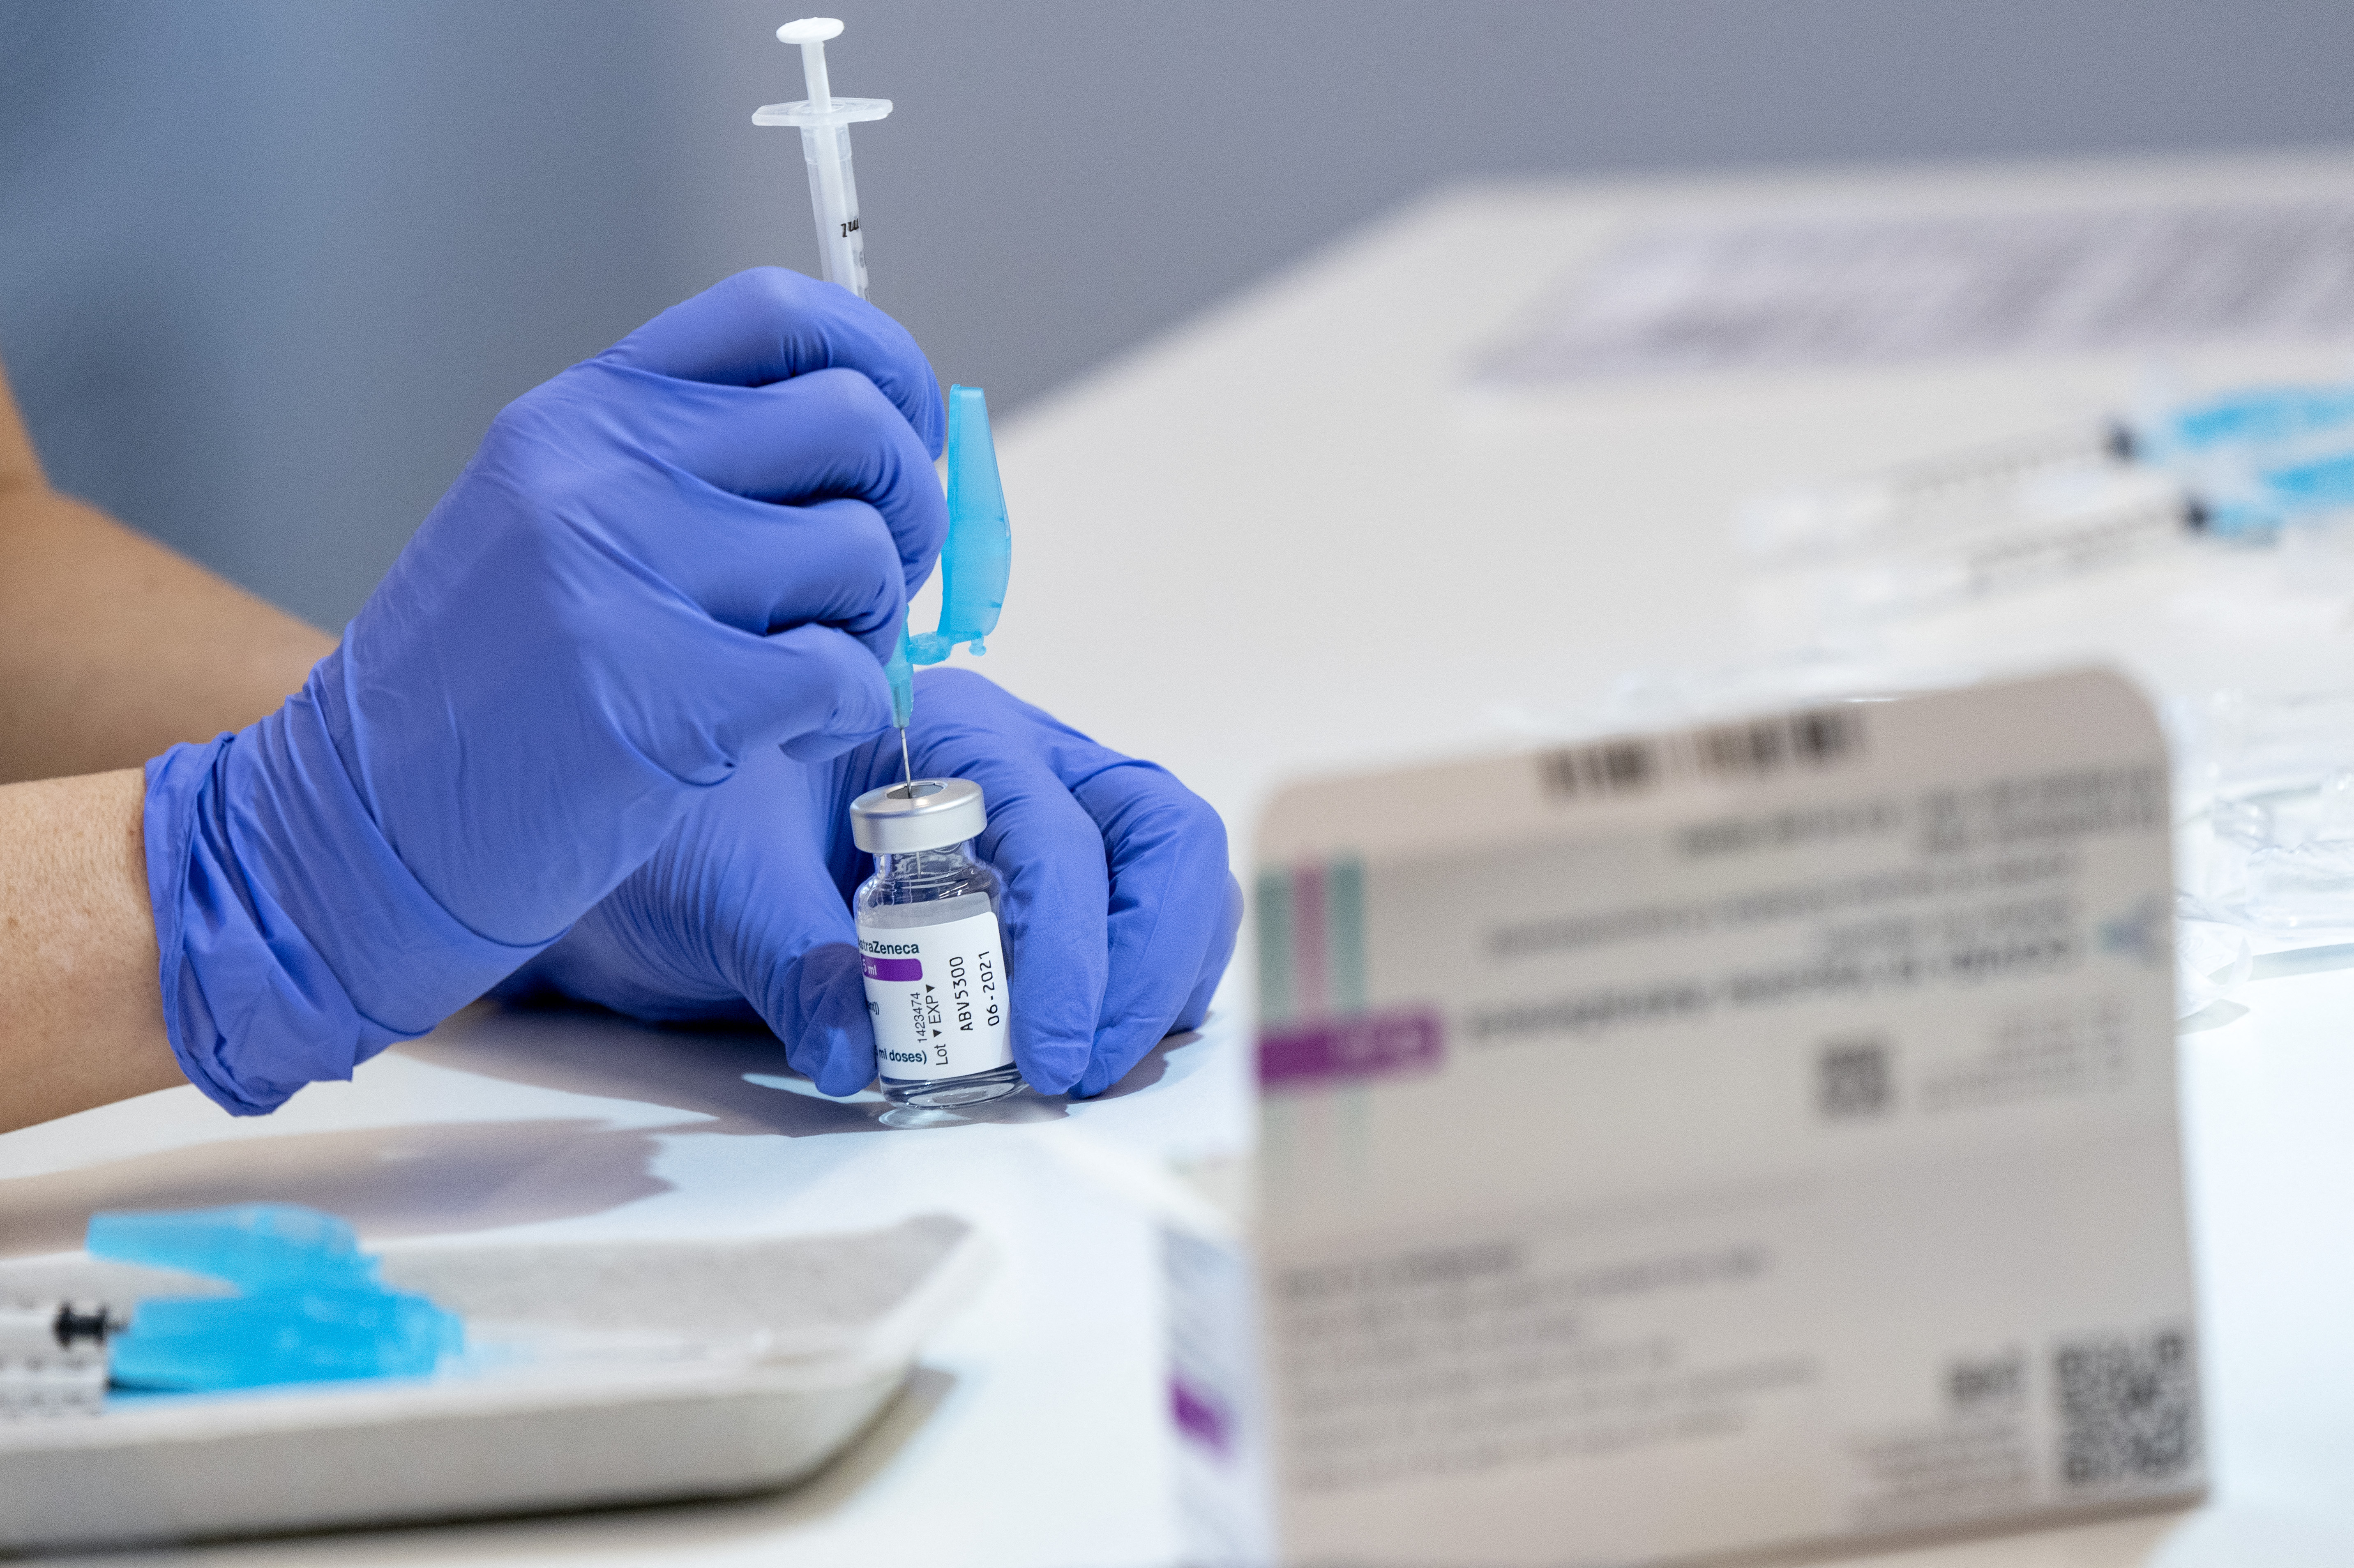 Friss kutatás: az AstraZeneca és a Pfizer vakcinájából az első oltás is 80 százalékos védettséget ad a súlyos megbetegedéssel szemben